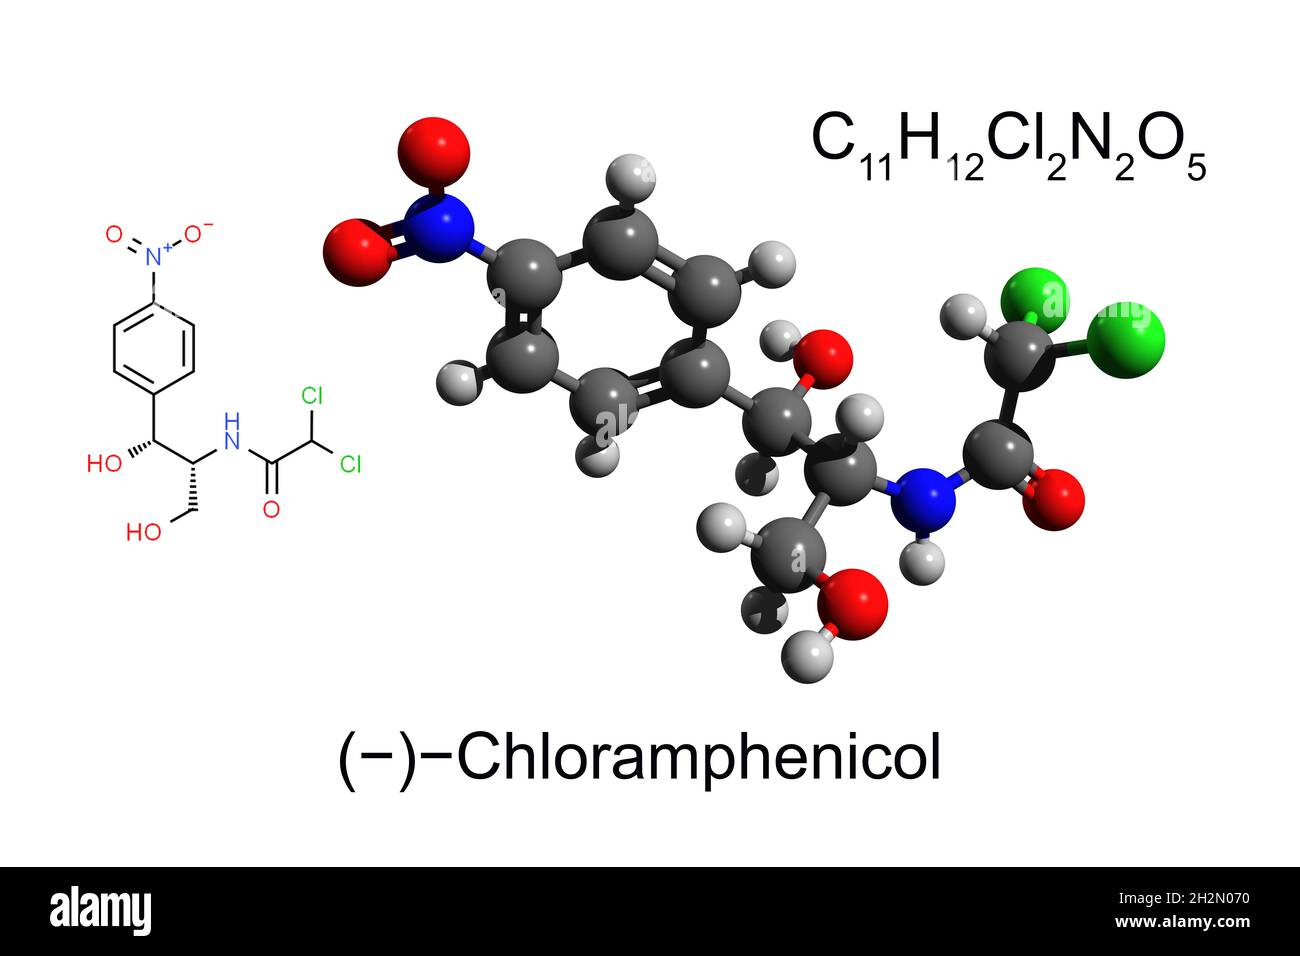 Formule chimique, formule structurale et modèle boule-et-bâton 3D de l'antibiotique chloramphénicol, fond blanc Banque D'Images